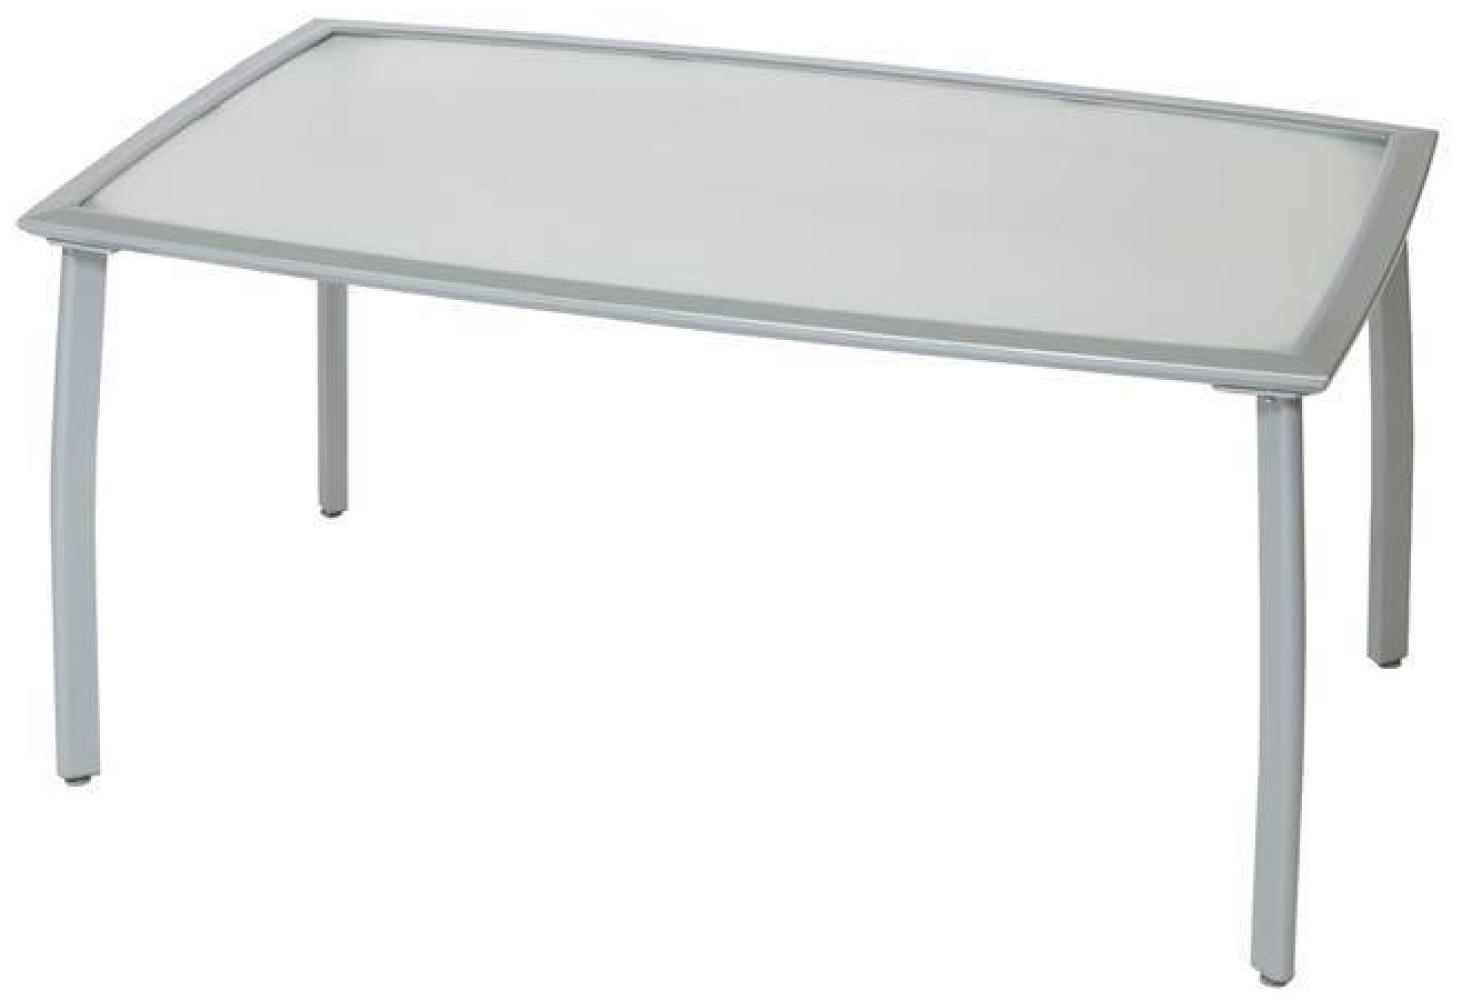 YOURSOL Gartentisch mit matter Glasplatte 150 x 90 cm, 6 Personen, Aluminium, Silber, Terrassentisch Bild 1